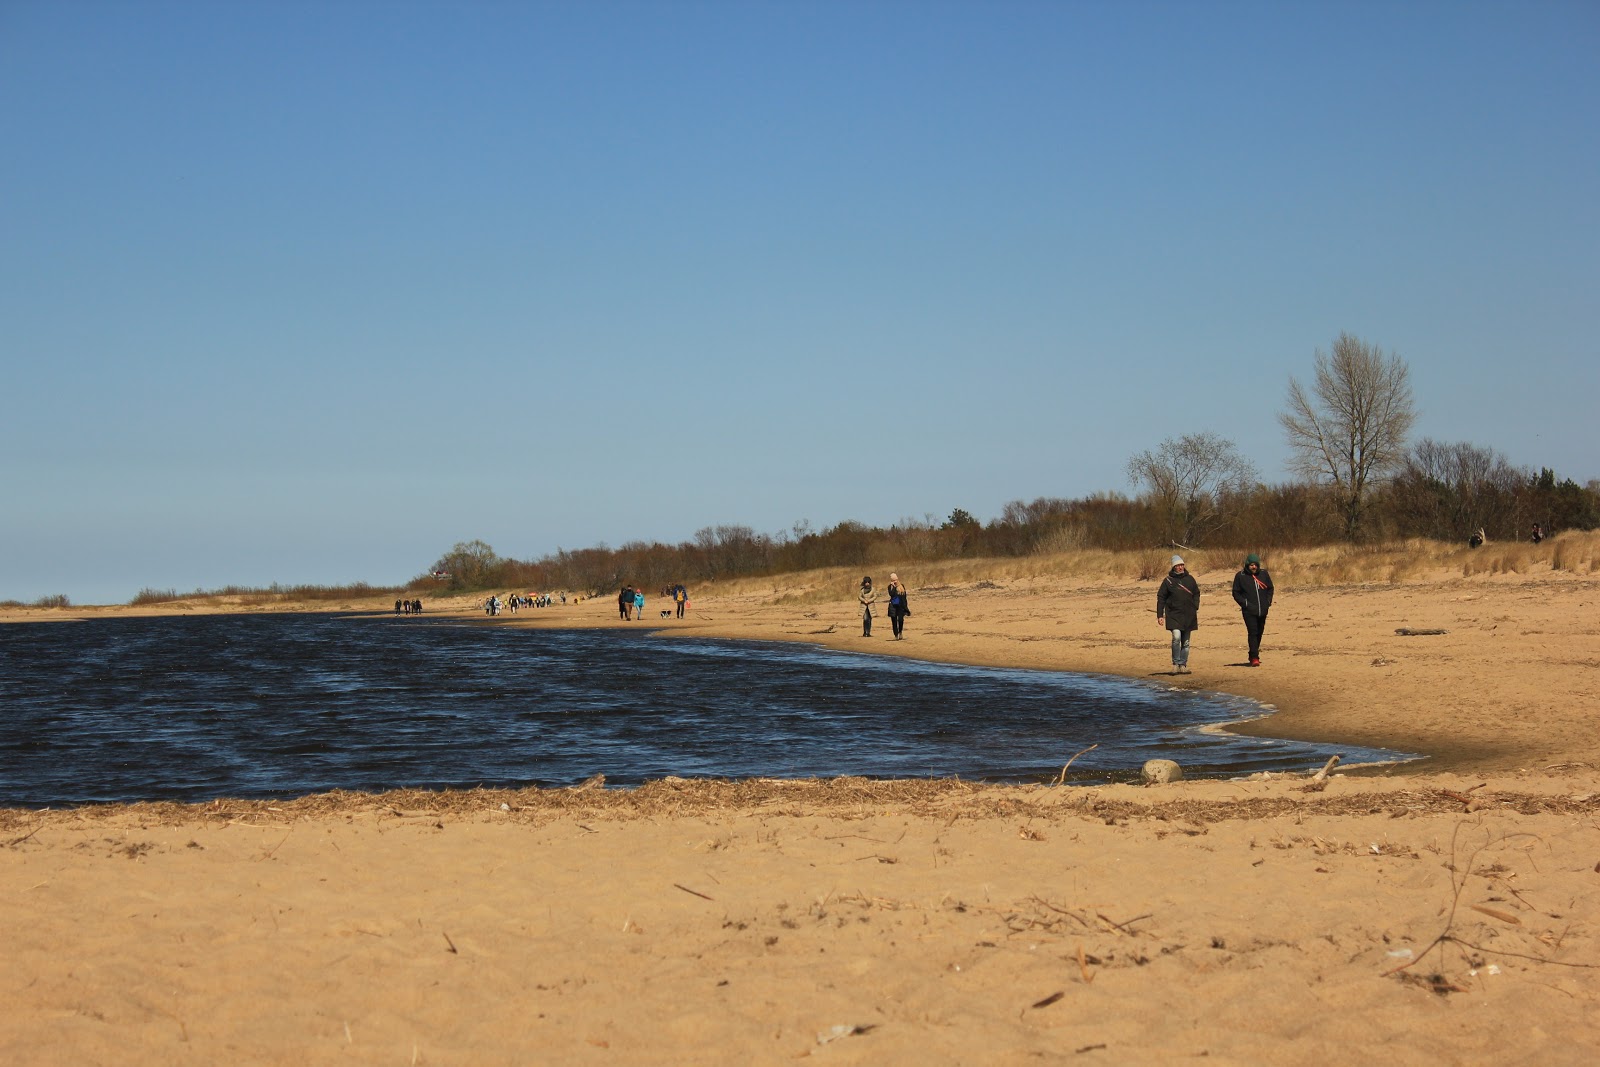 Valokuva Vitsula beach Gdanskista. sijaitsee luonnonalueella